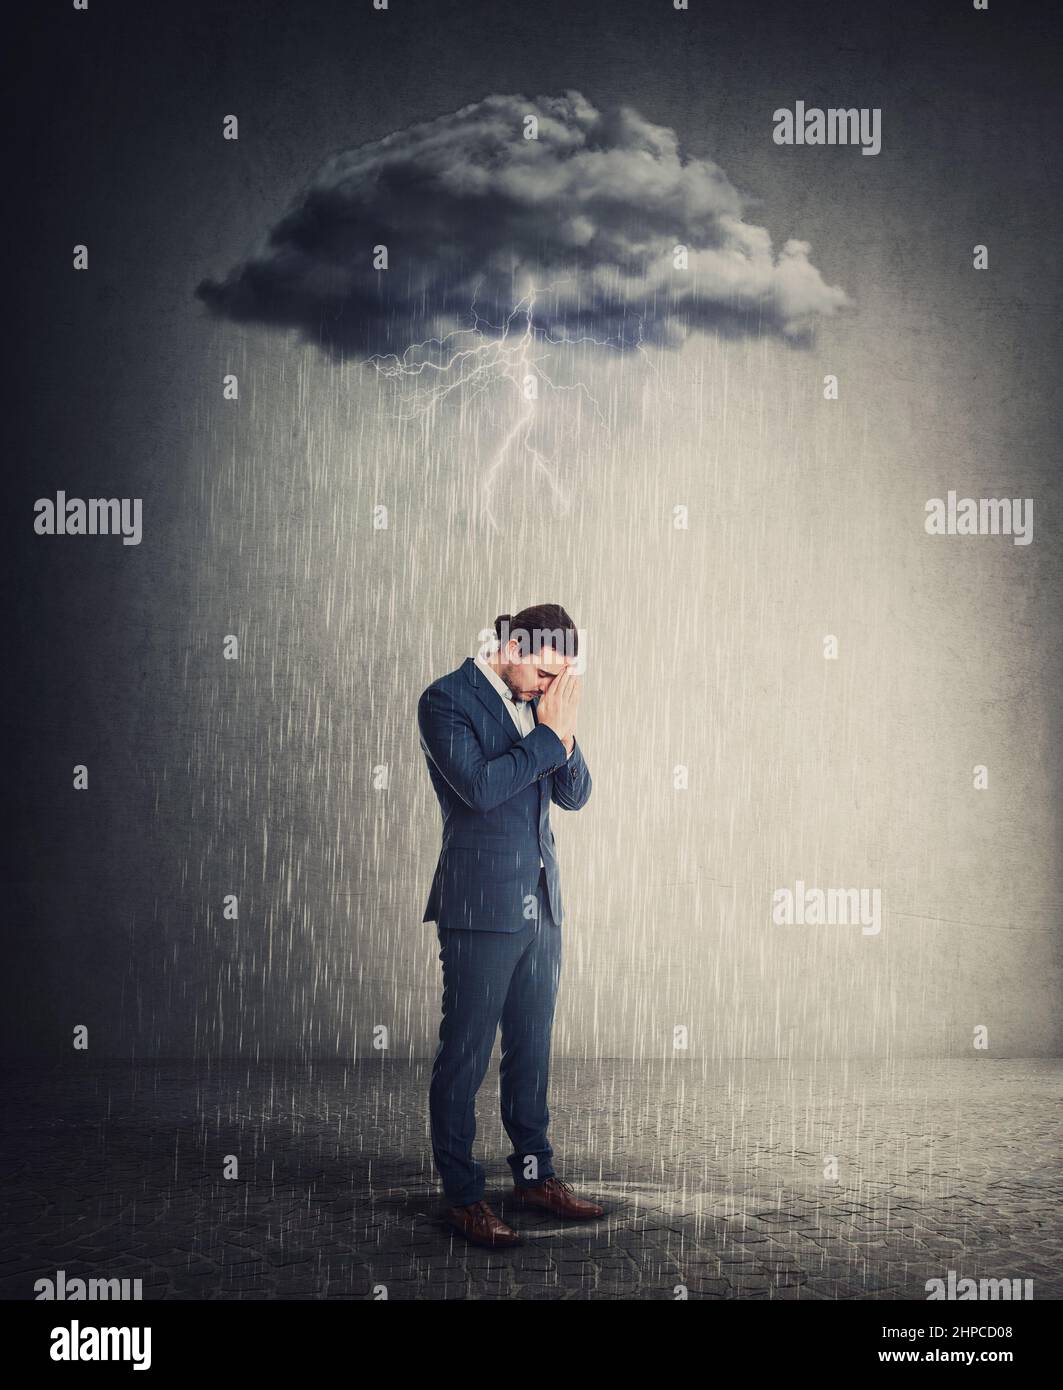 Pessimiste et déprimé homme d'affaires debout sous la pluie alors que les pensées négatives se dresse au-dessus de sa tête comme un nuage de tempête. Personne souffrant d'anxiété a Banque D'Images